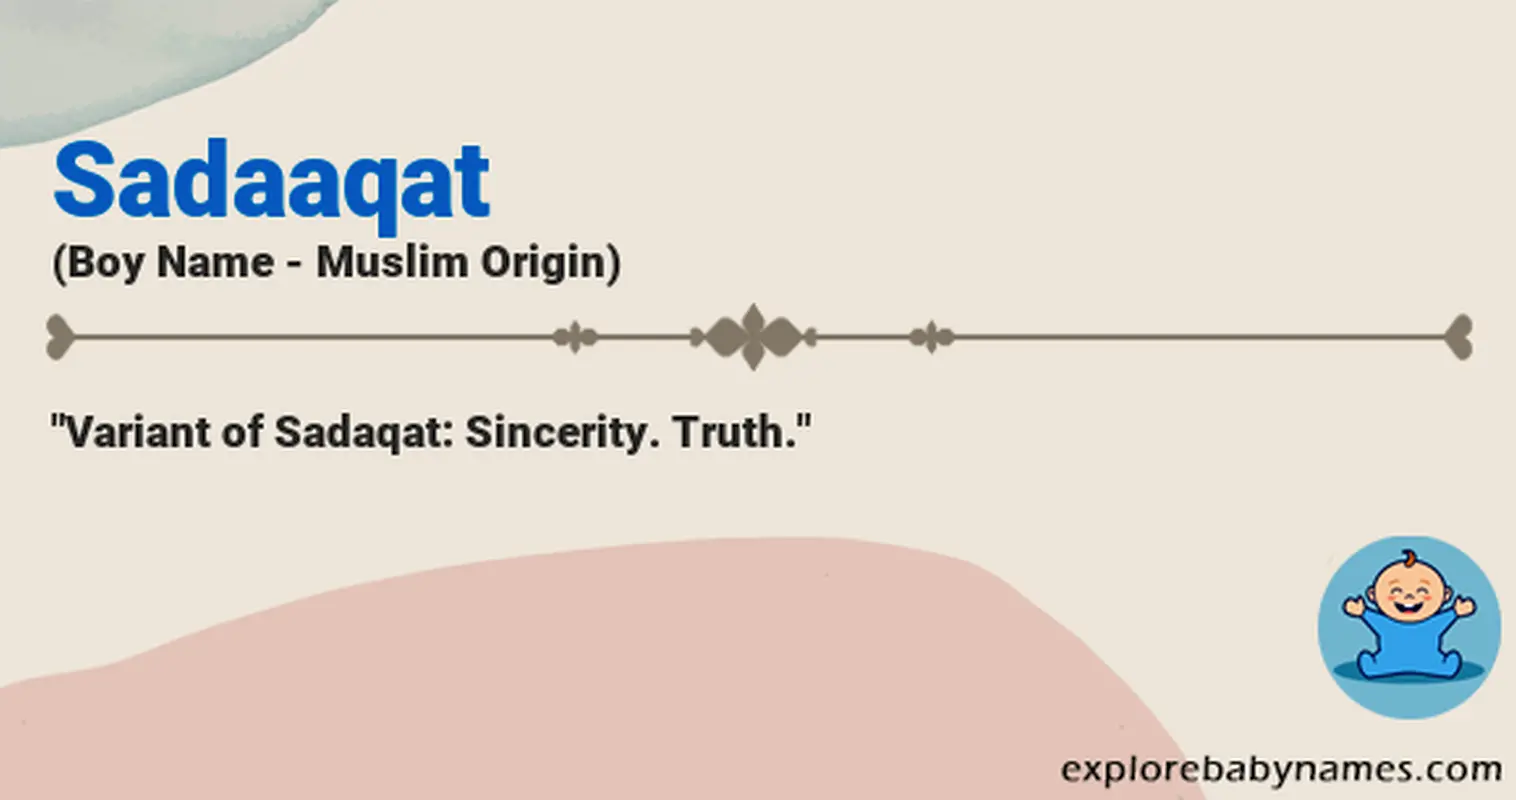 Meaning of Sadaaqat